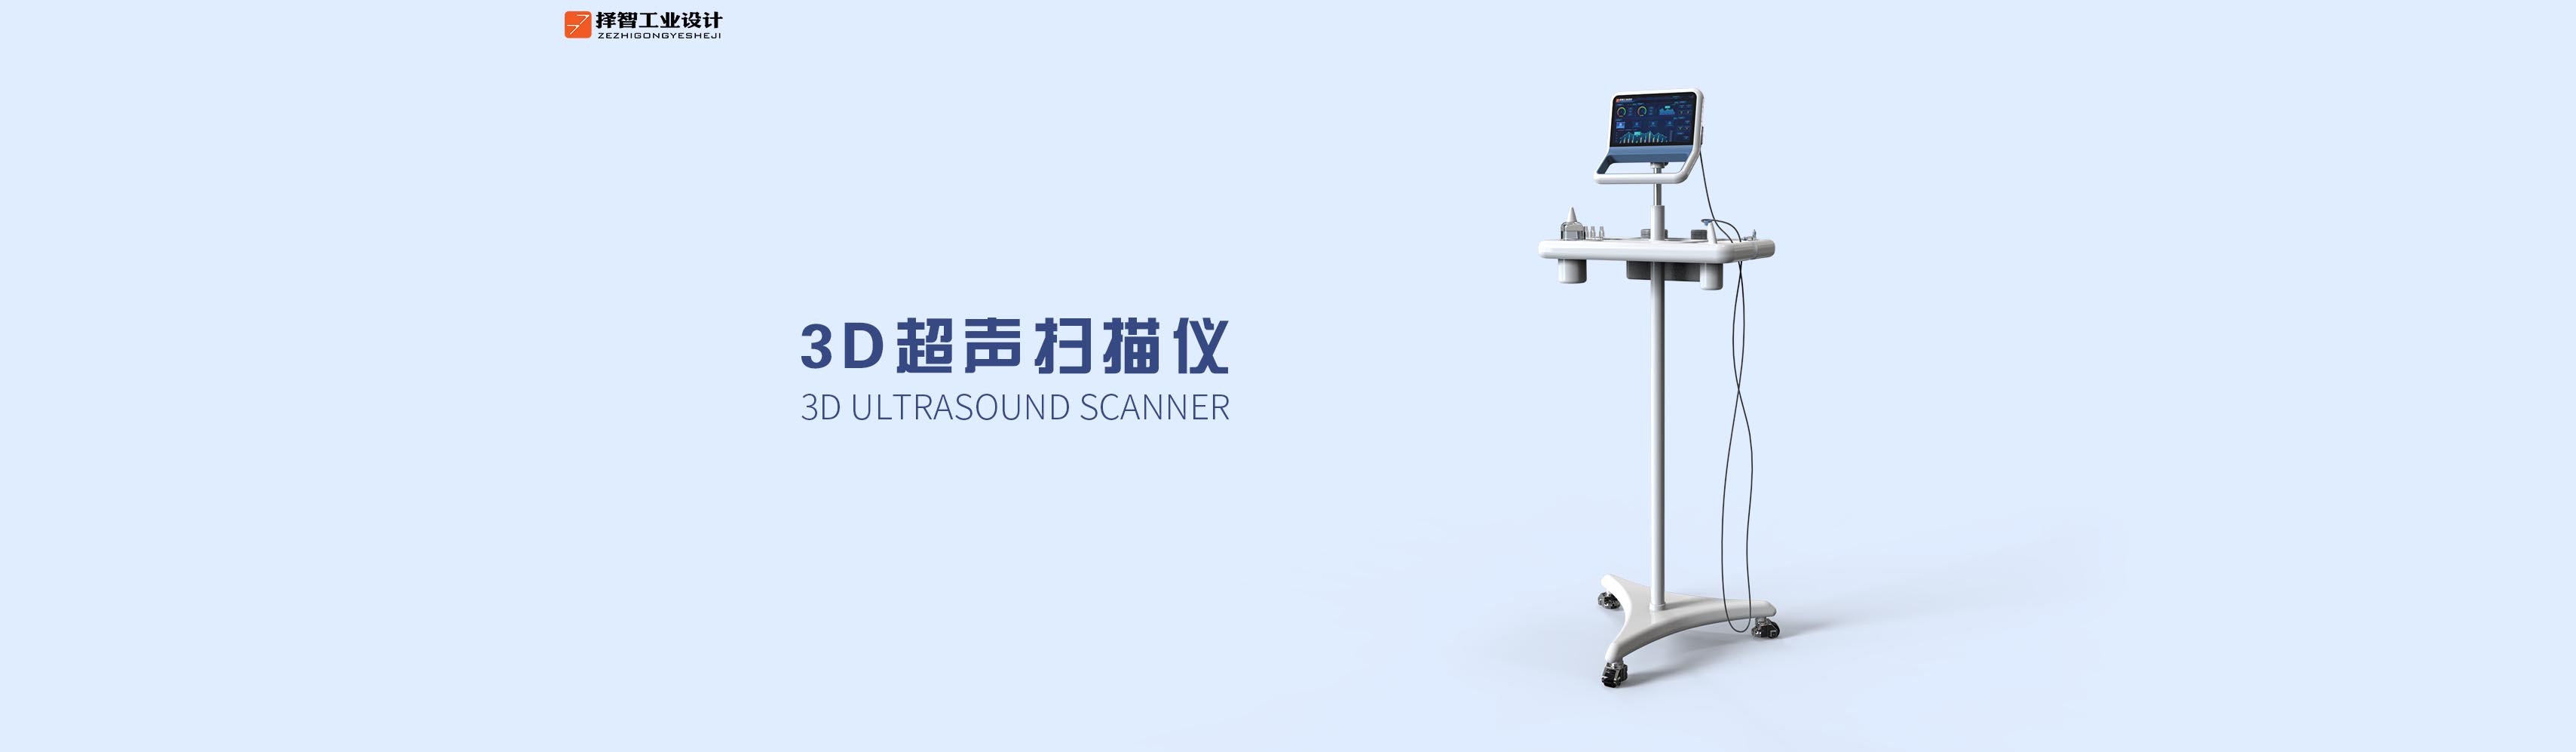 上海苏州产品设计工业产品外观设计结构设计3D超声扫描仪